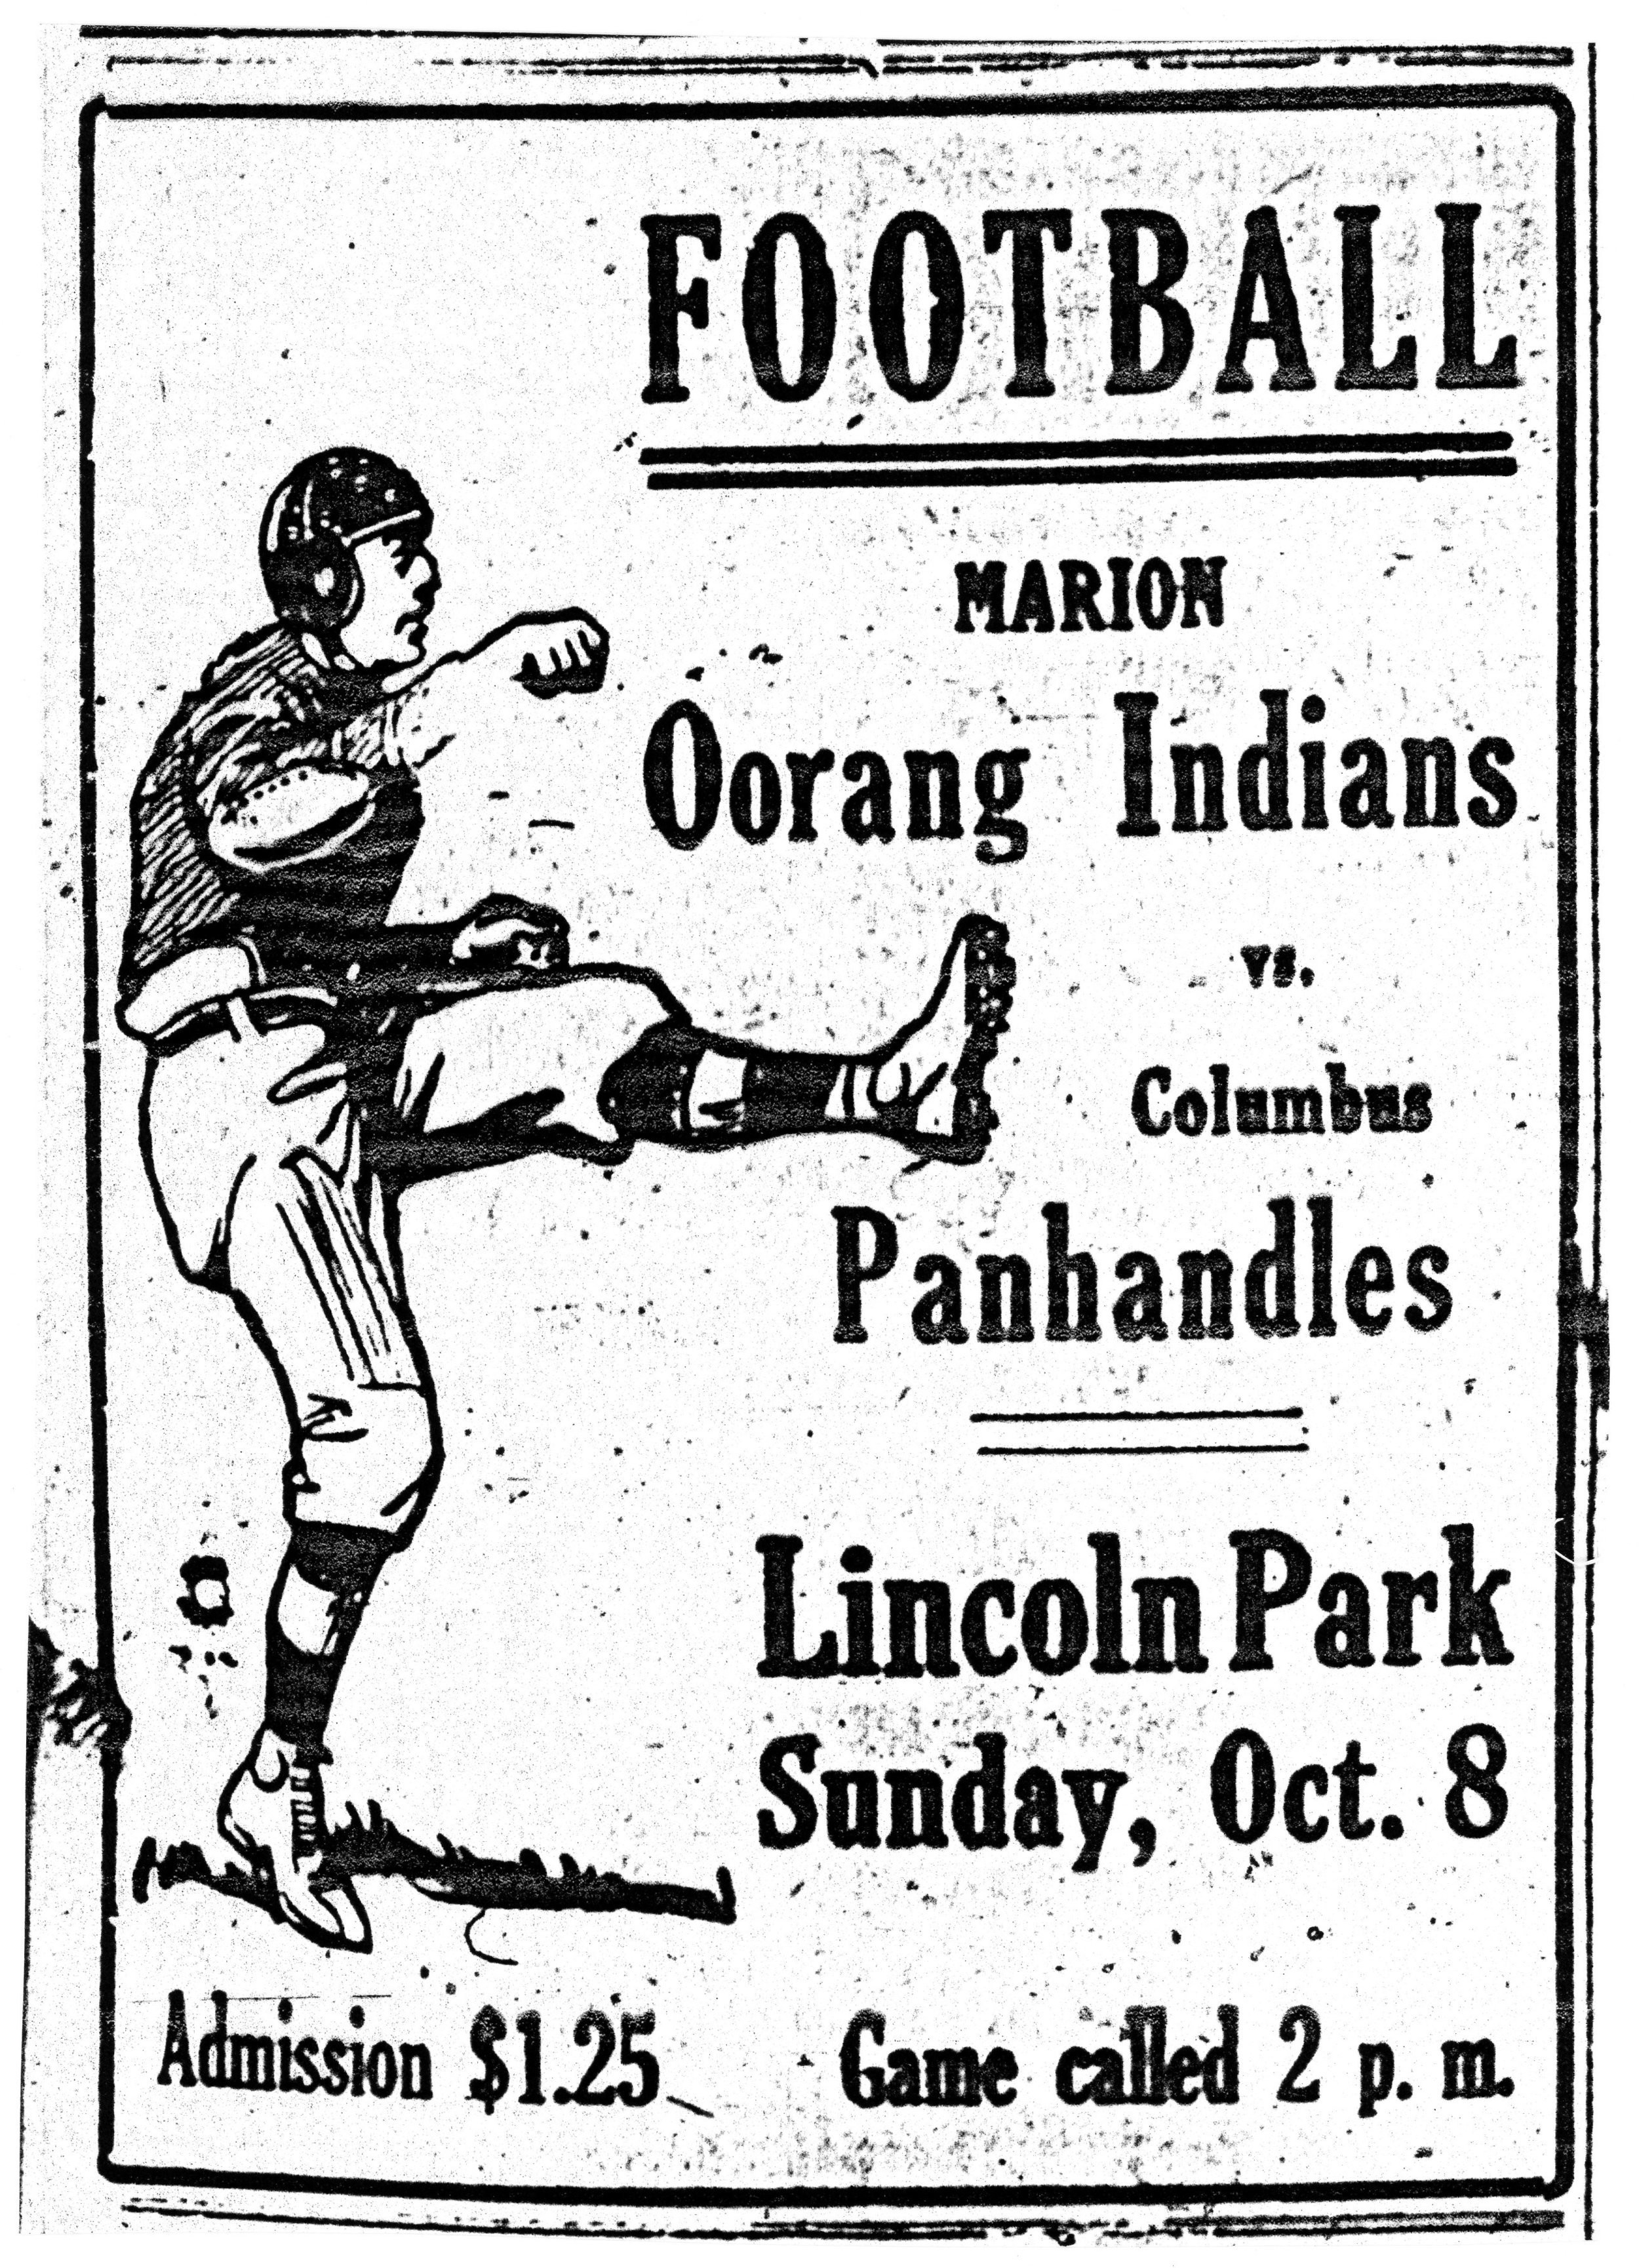 1922-oorang-indians-vs-columbus-panhandles-football-ad-at-lincoln-park.jpg